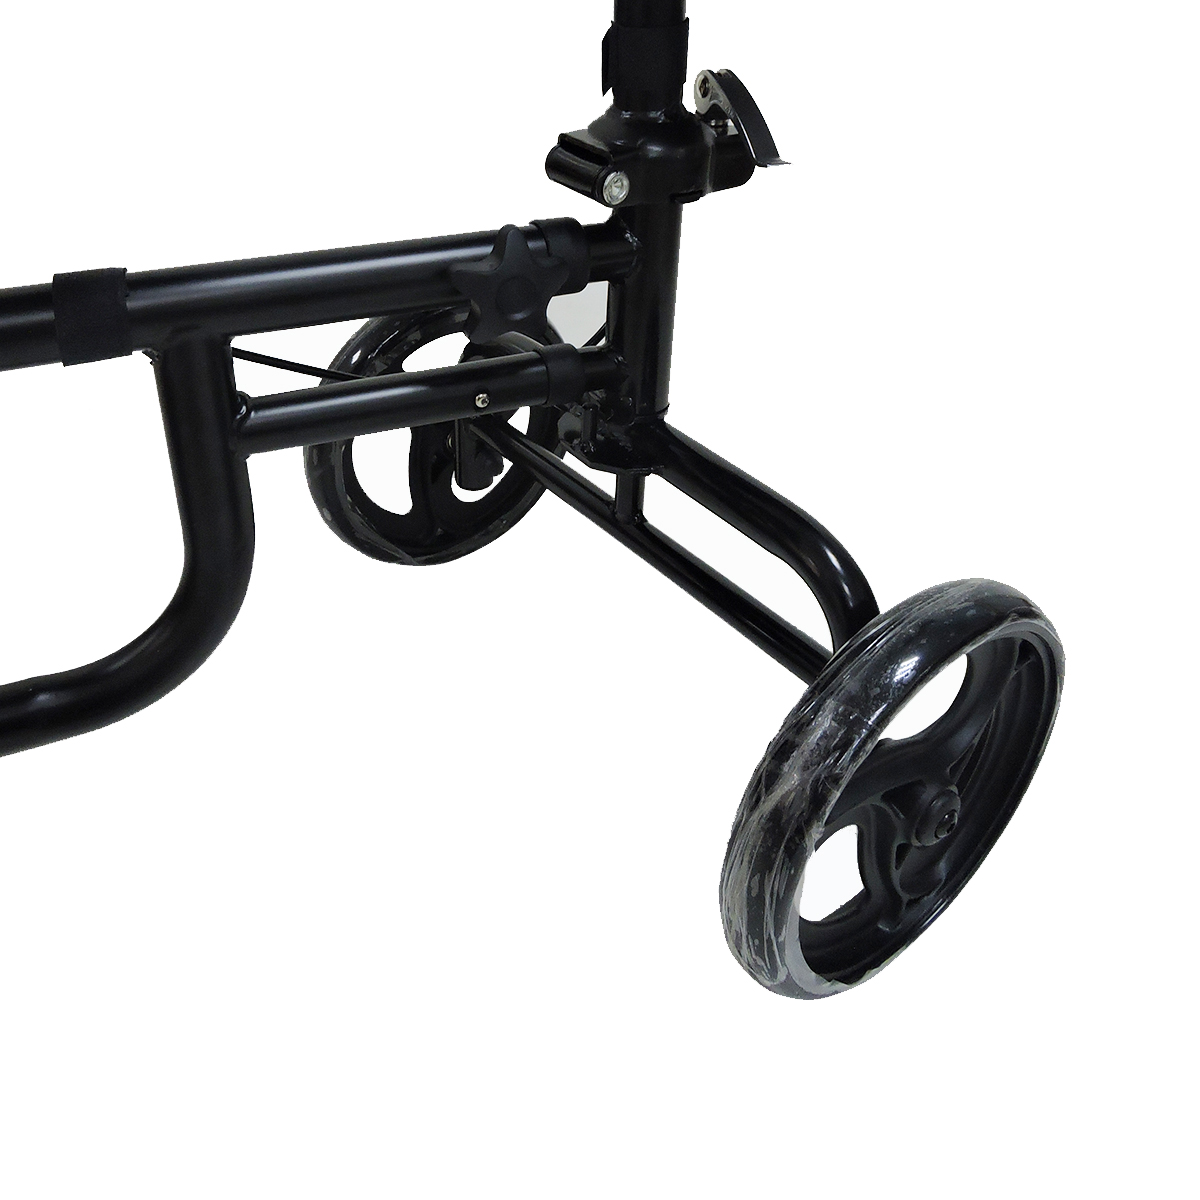 Mobility-Knee-Walker-Scooter-Roller-Crutch-Leg-Steerable-Foldable-Design-Adjustable-Height-Adjustabl-1940054-10